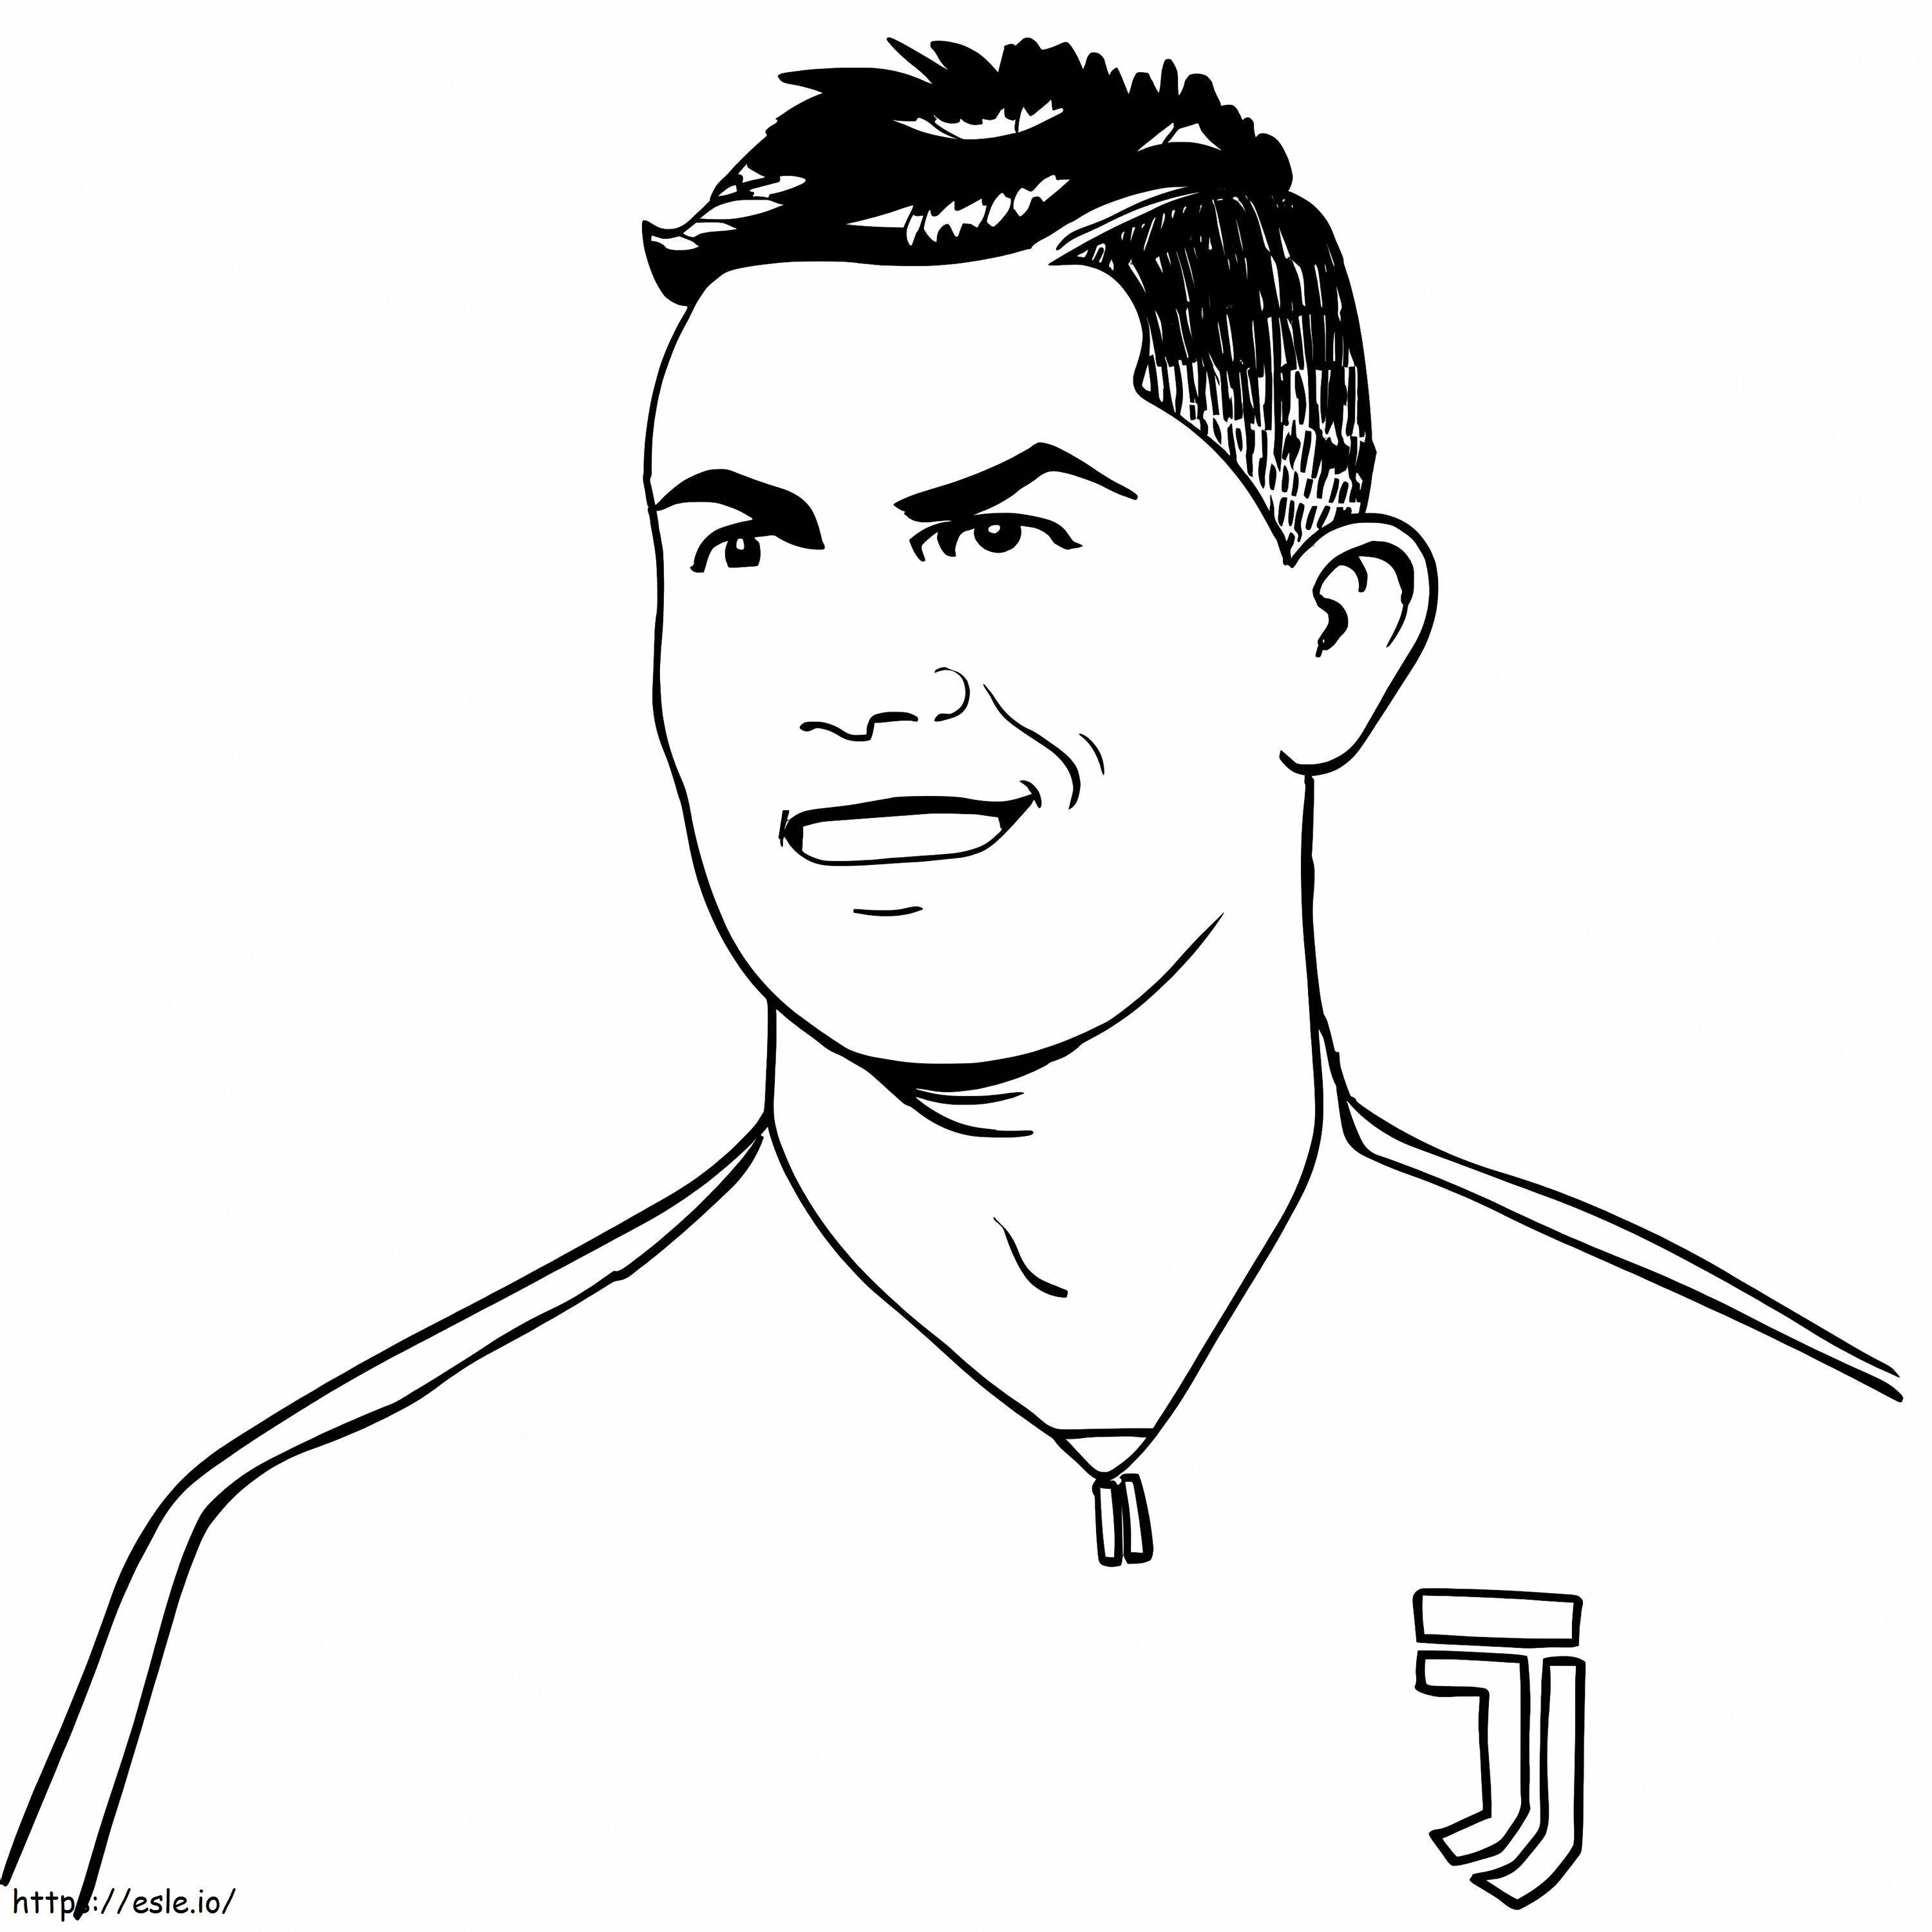 Il volto sorridente di Cristiano Ronaldo da colorare